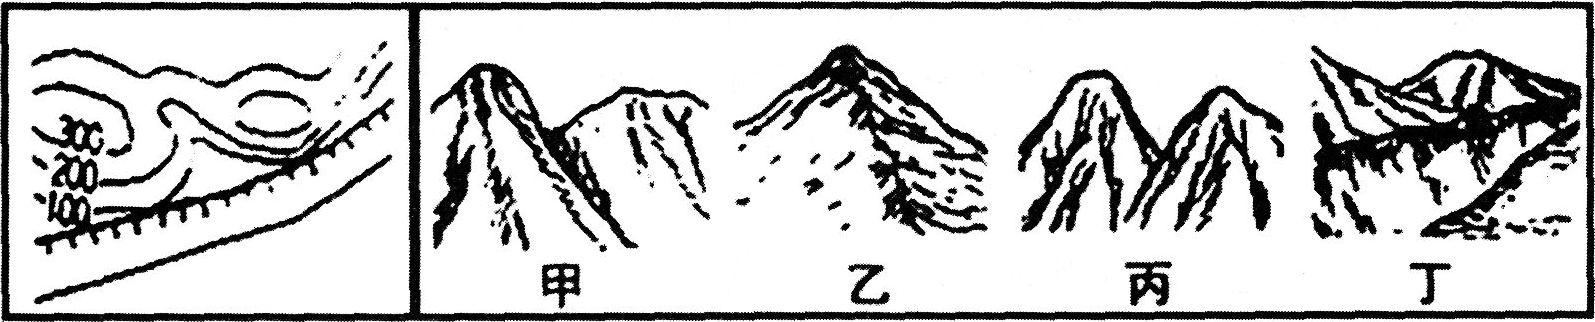 下面的等高线地形图所对应的地形景观素描图是（）。A.甲B.乙C.丙D.丁下面的等高线地形图所对应的地